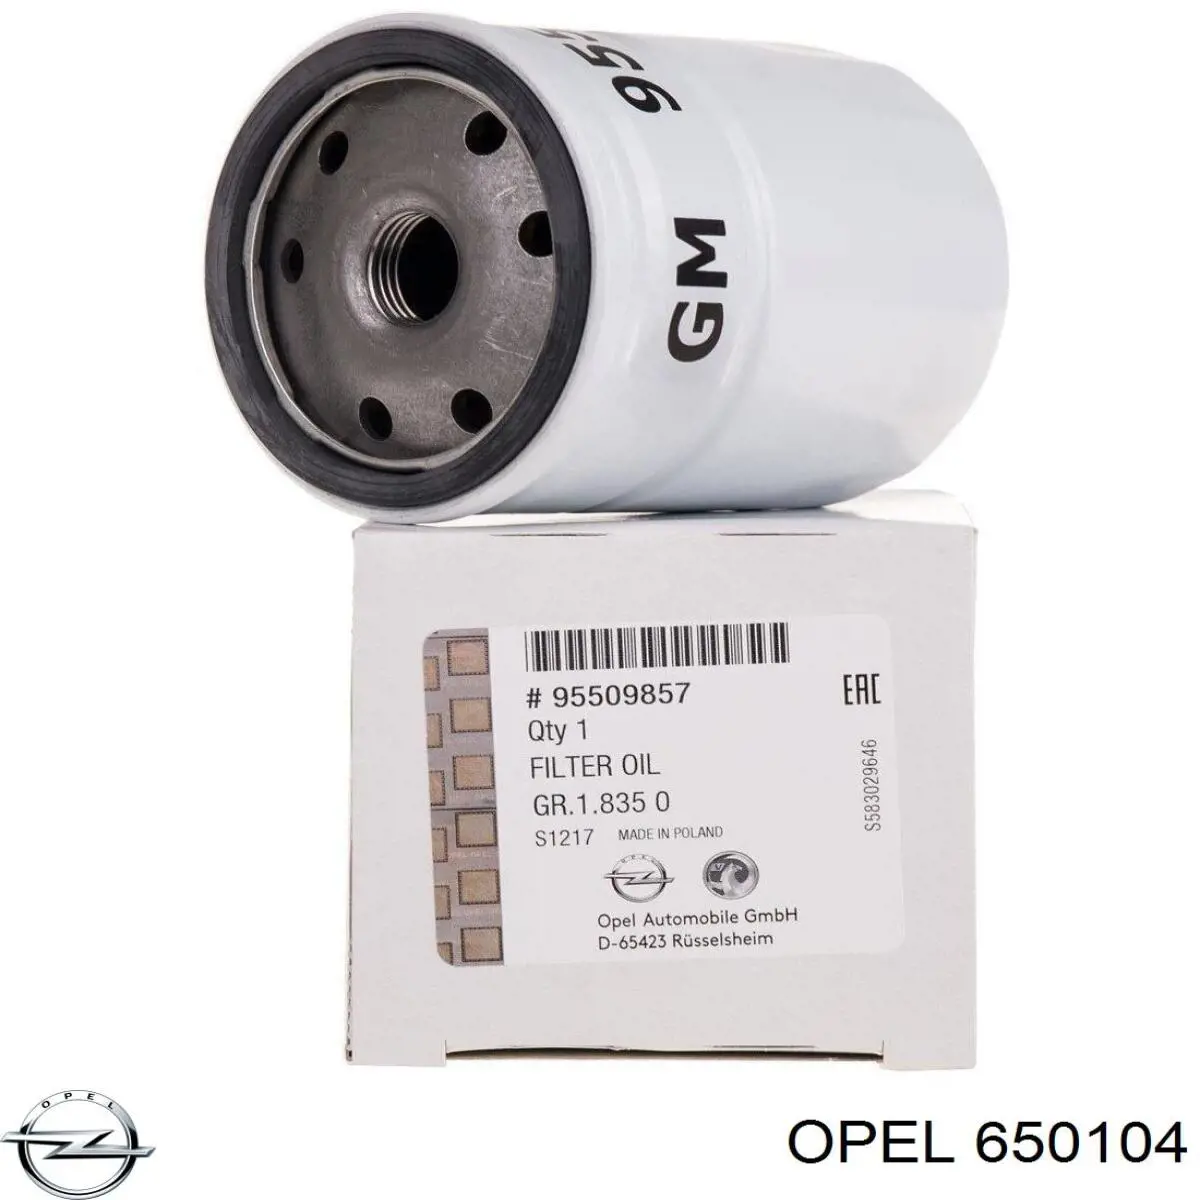 650104 Opel filtro de aceite